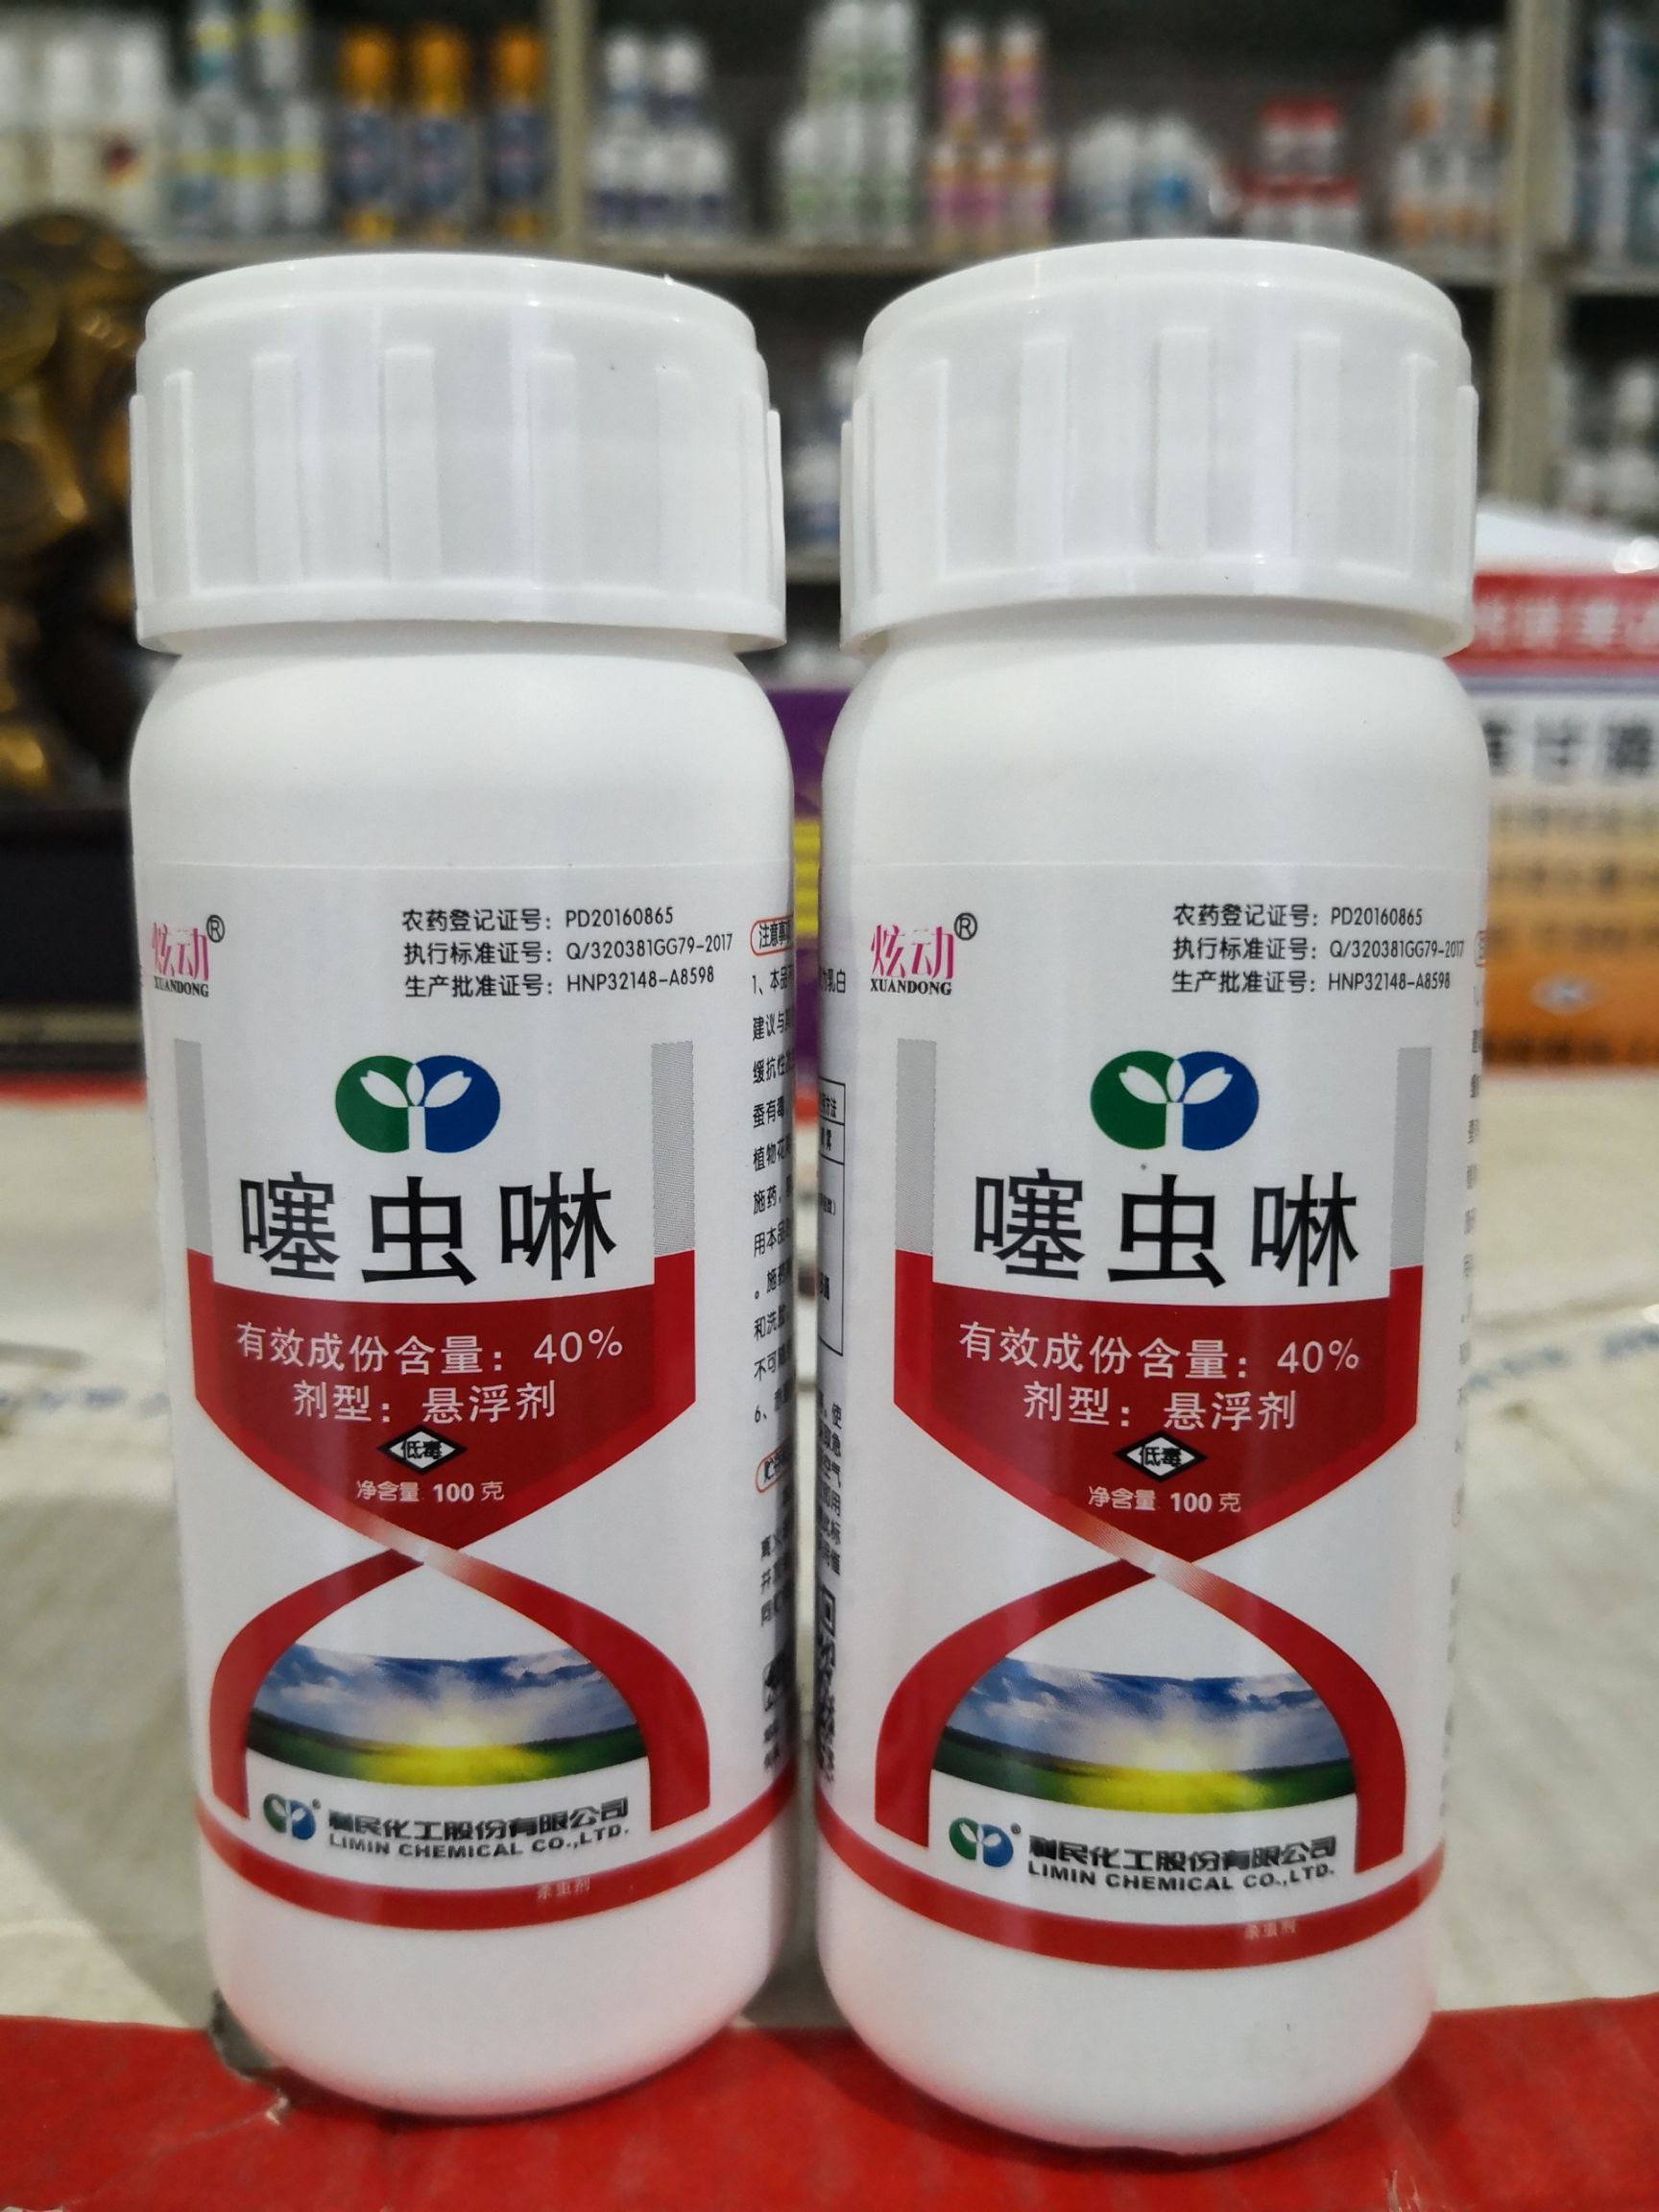 拜耳农化公司和日本拜耳农化公司合作开发,是新型氯代烟碱类杀虫剂